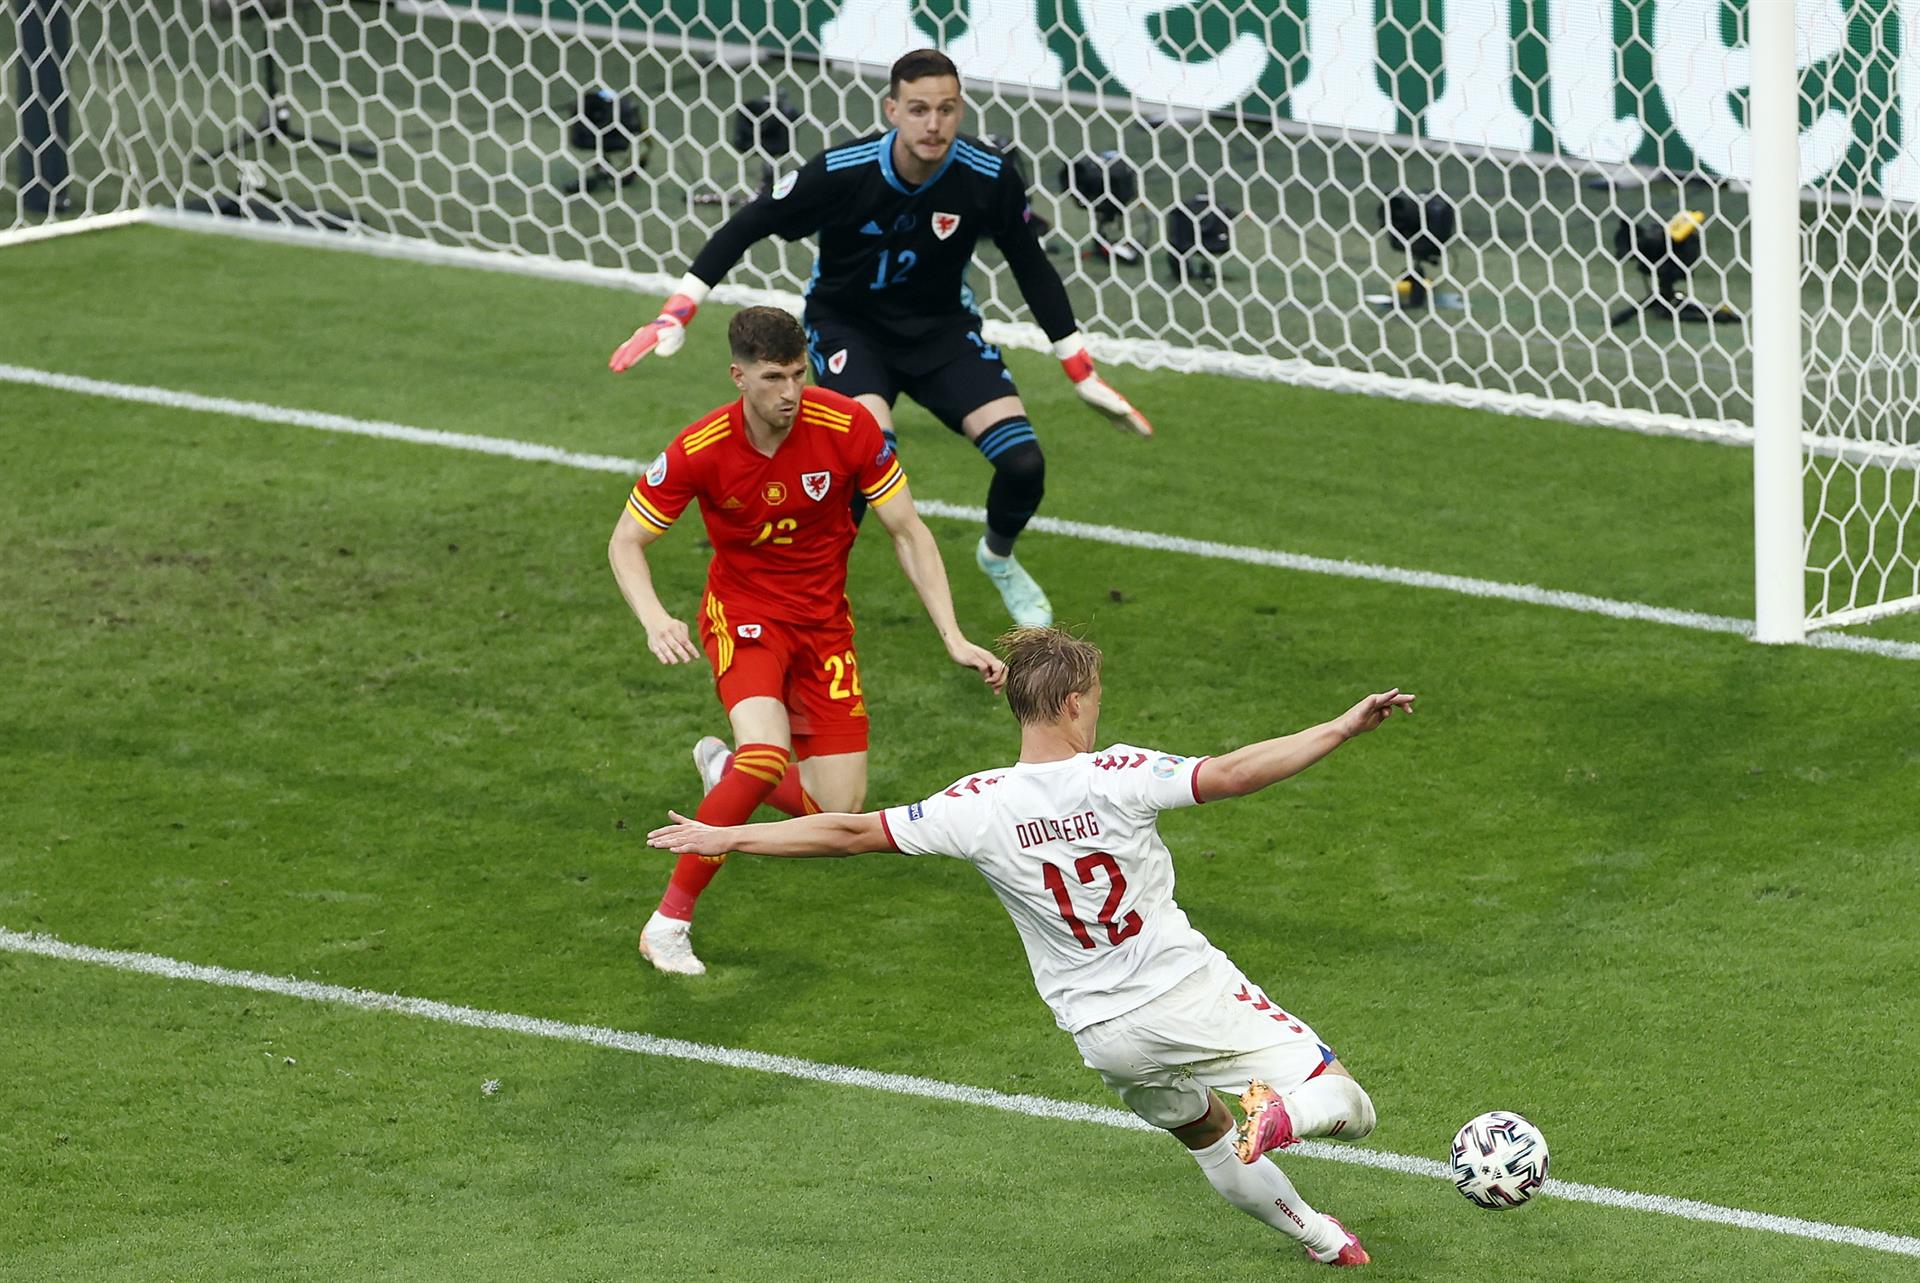 Dinamarca golea a Gales y se mete en cuartos (0-4)